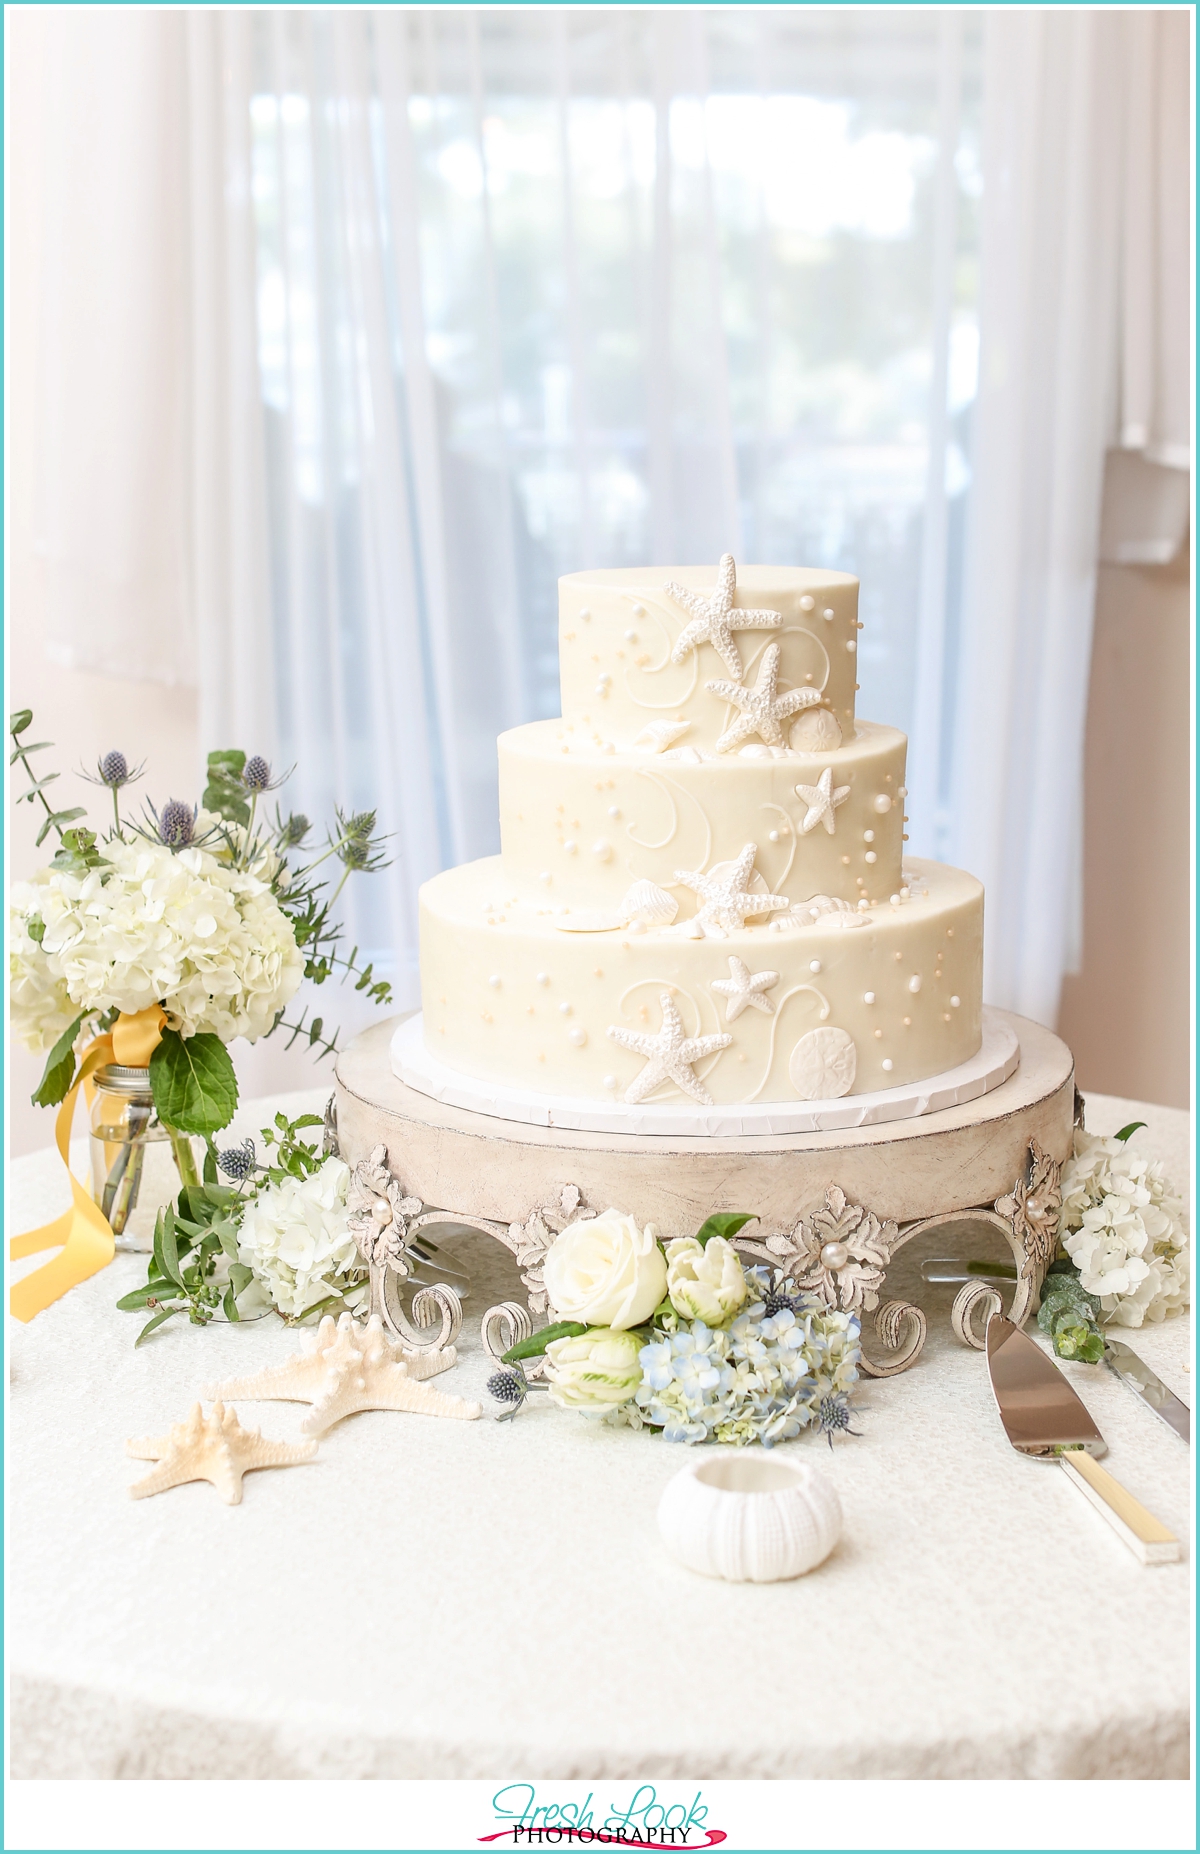 Incredible Edibles ocean wedding cake